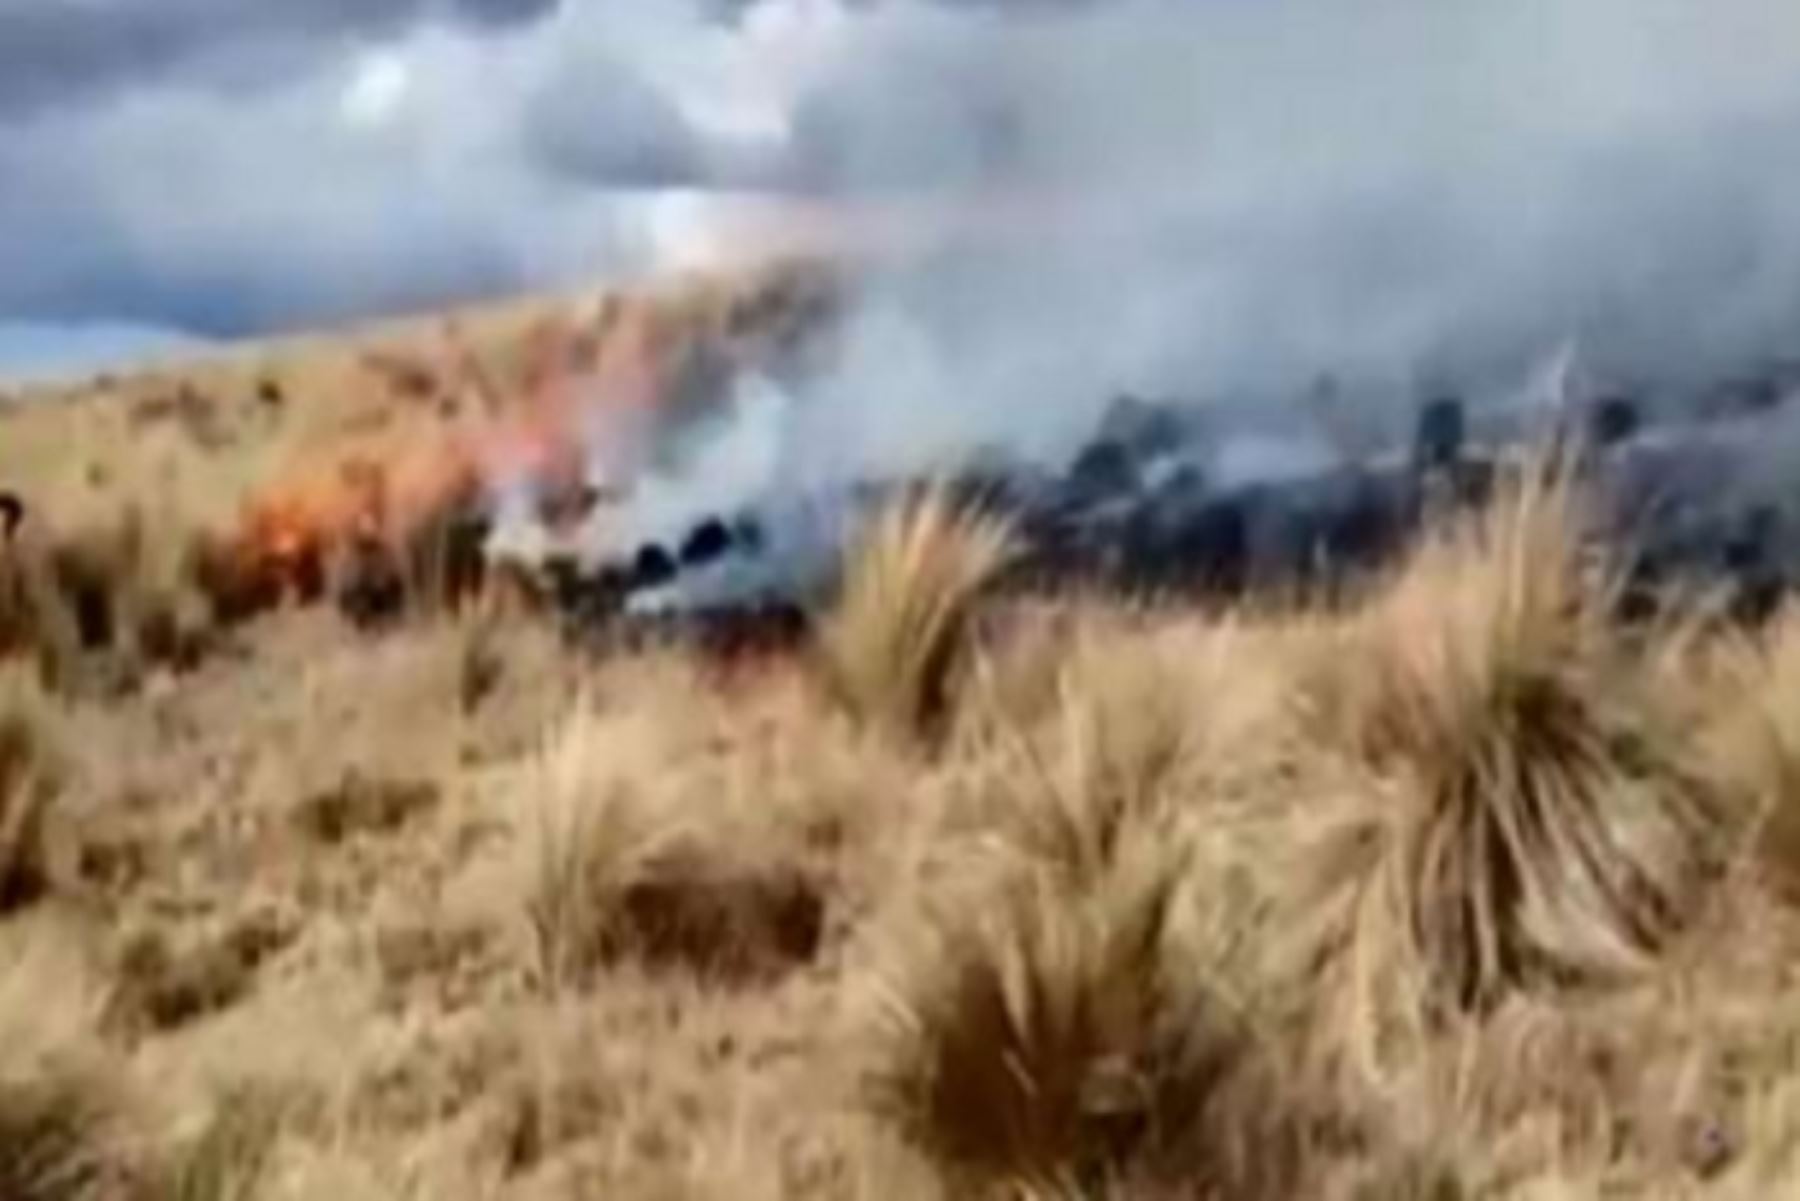 Al menos 5 hectáreas de cobertura natural destruidas, dejó el incendio forestal que se registró en la víspera en el centro poblado Aguapuquio, en el distrito de Chiara, provincia de Huamanga, región Ayacucho, informó el Instituto Nacional de Defensa Civil (Indeci).